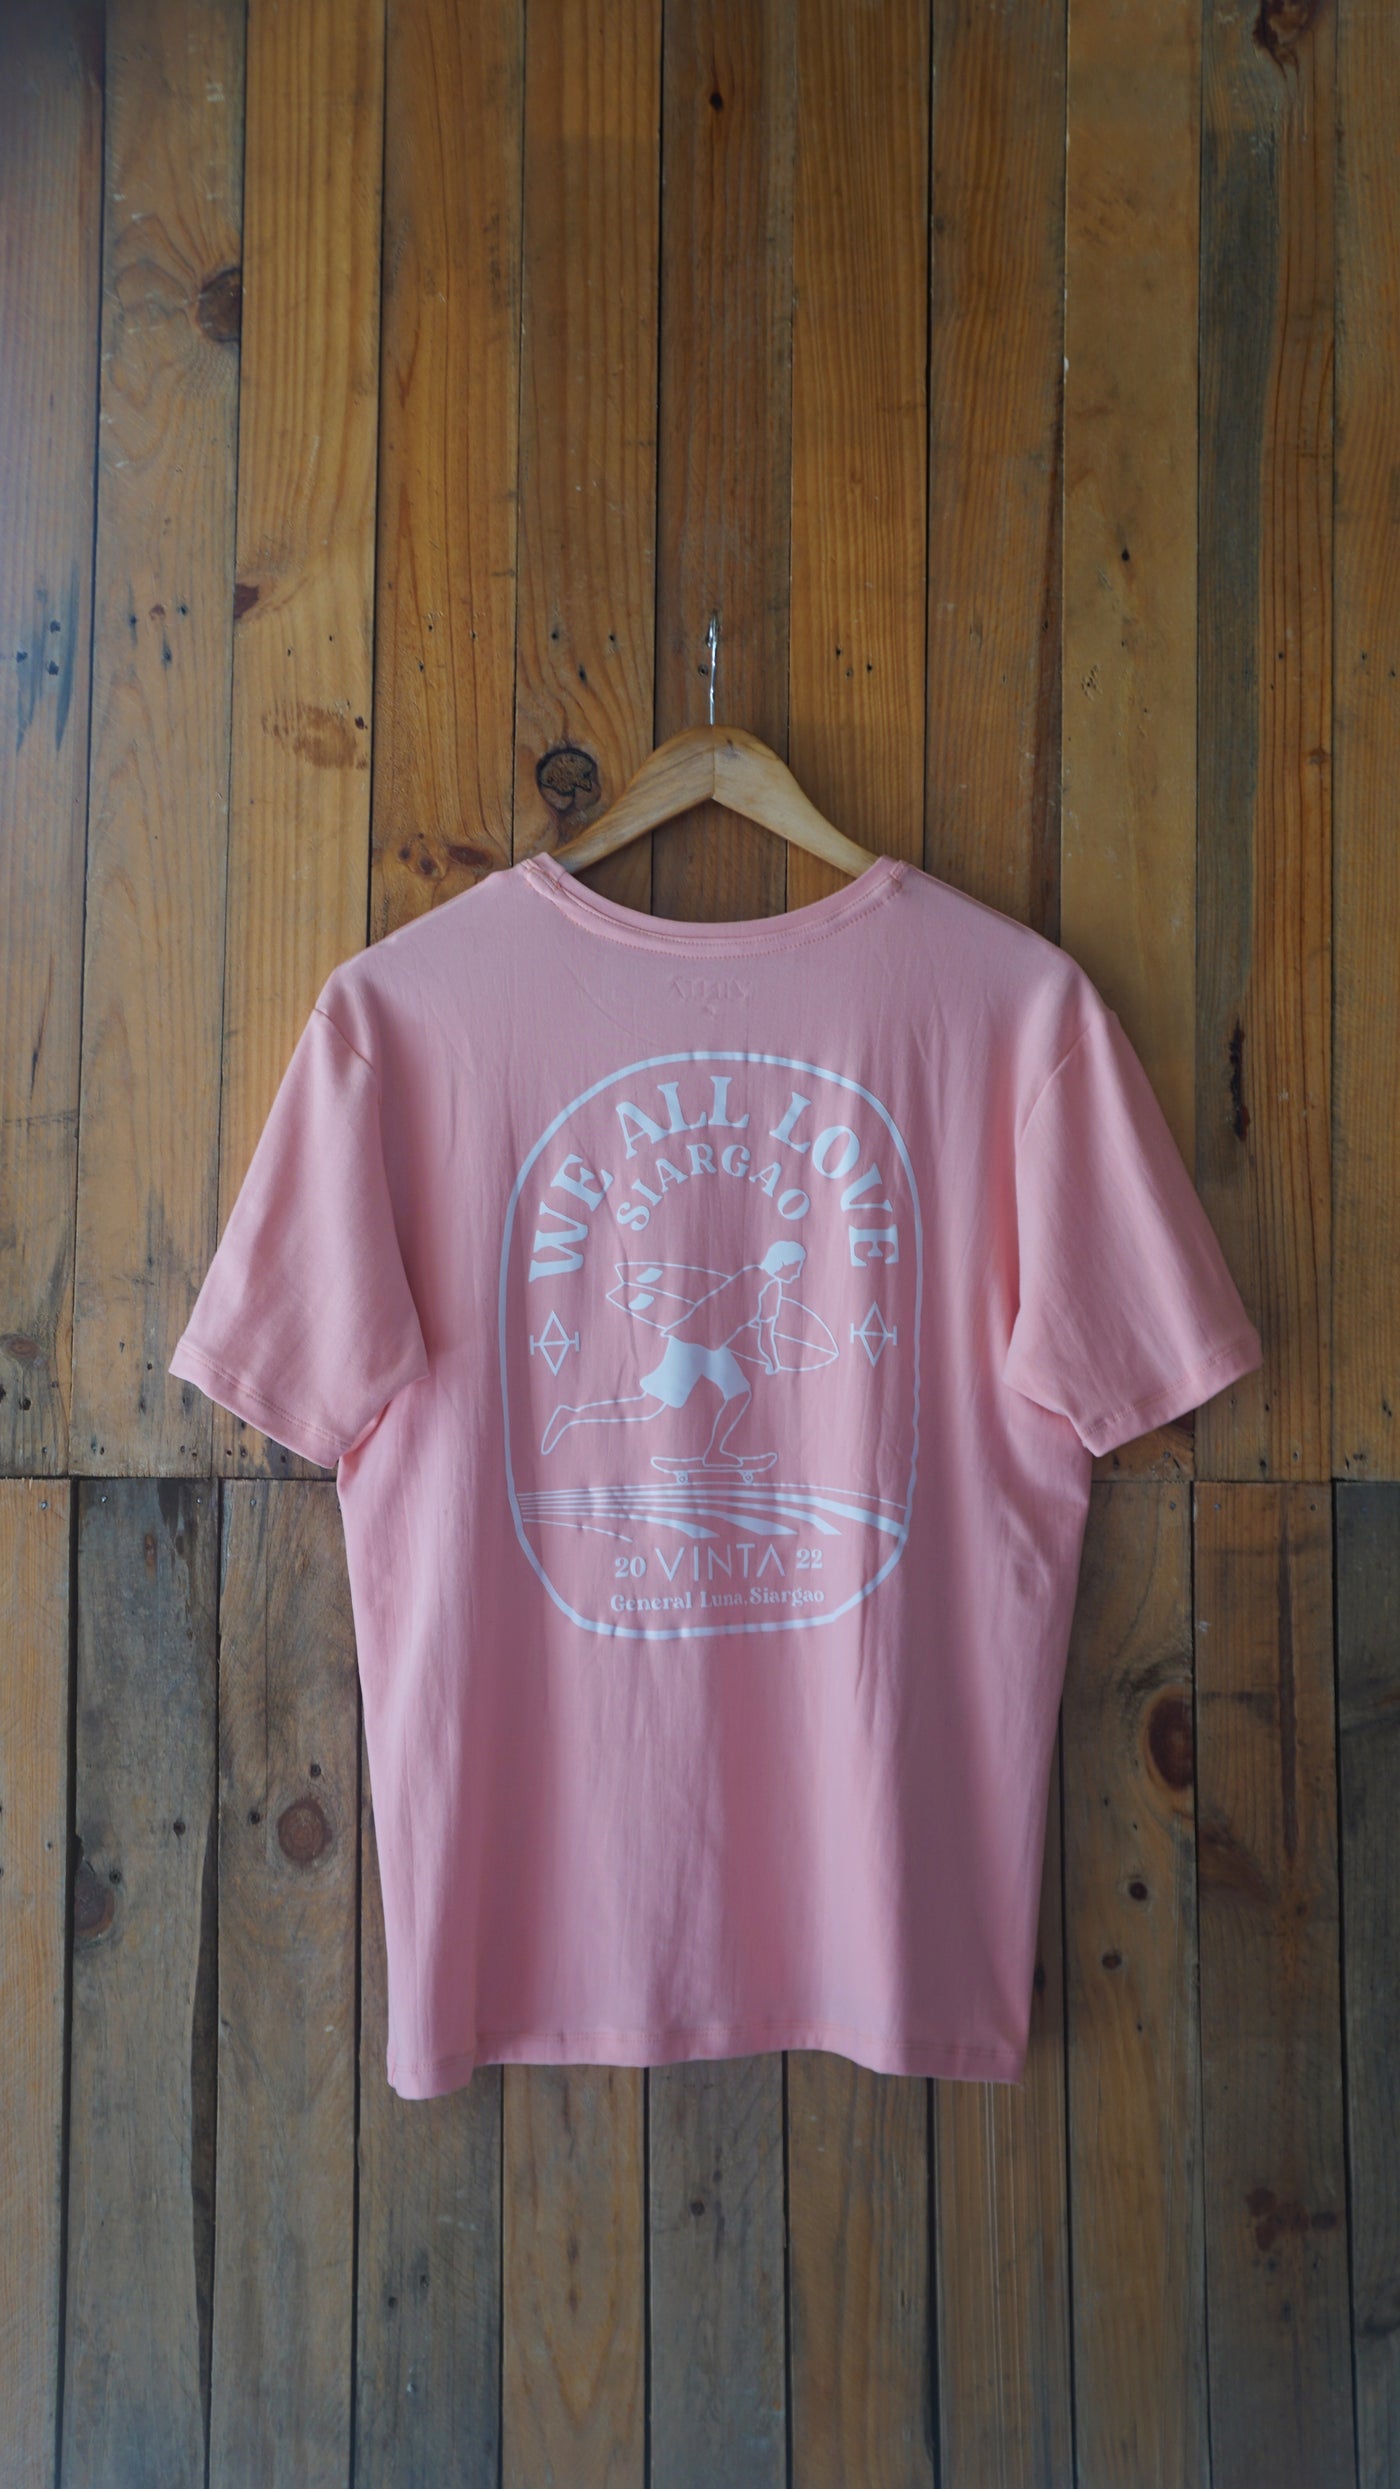 Vinta Men's T-Shirt - We All Love Siargao